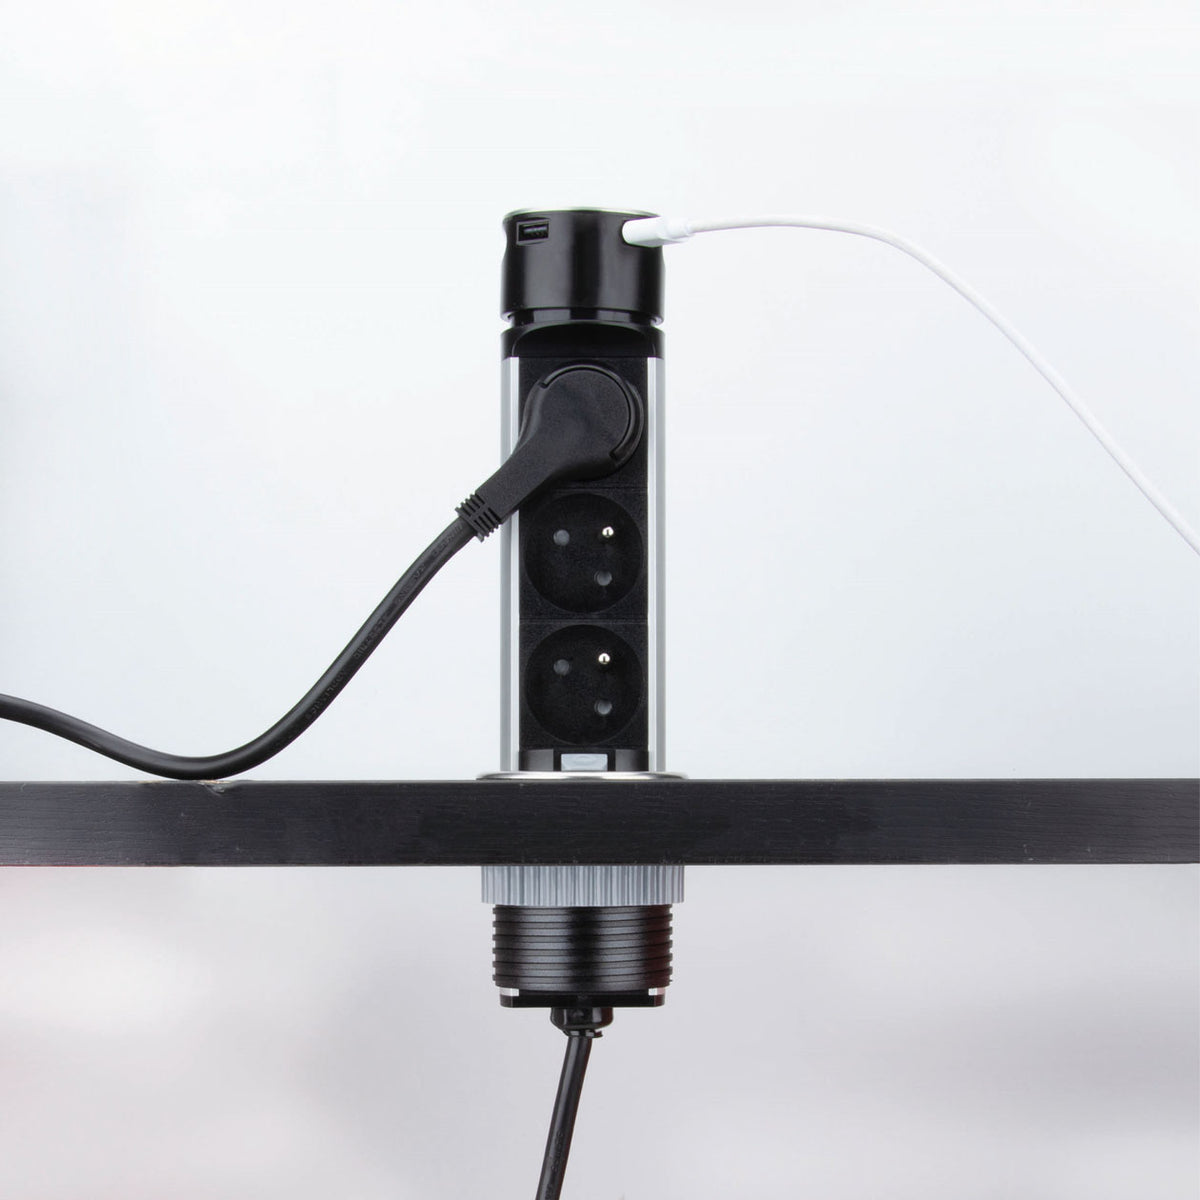 Prise plan de travail SKY - Bloc 3 prises + 2 USB rétractables Inox et noir